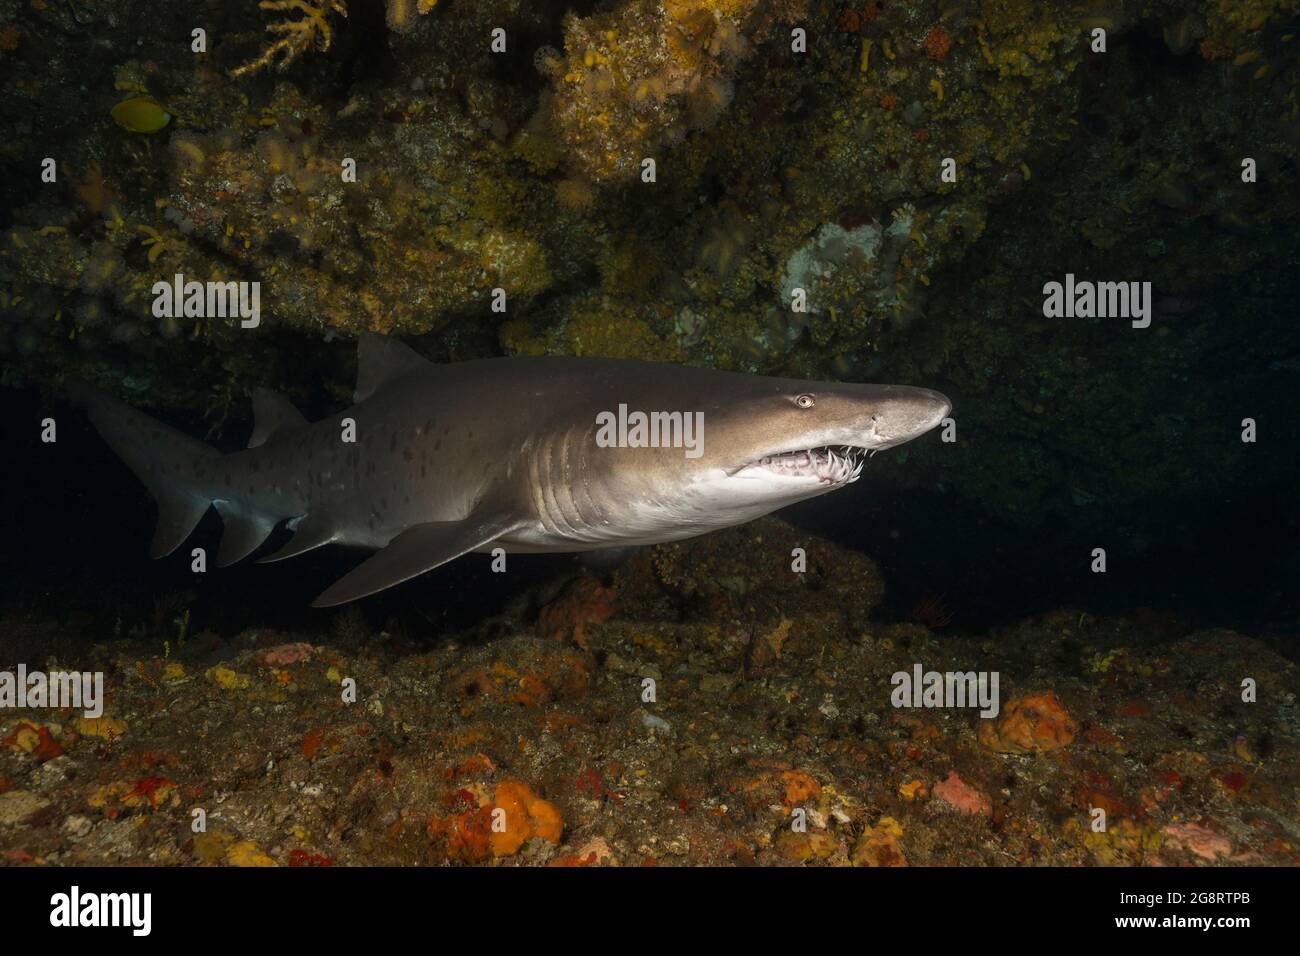 Sand tiger shark (Carcharias taurus) at Aliwal Shoal Stock Photo